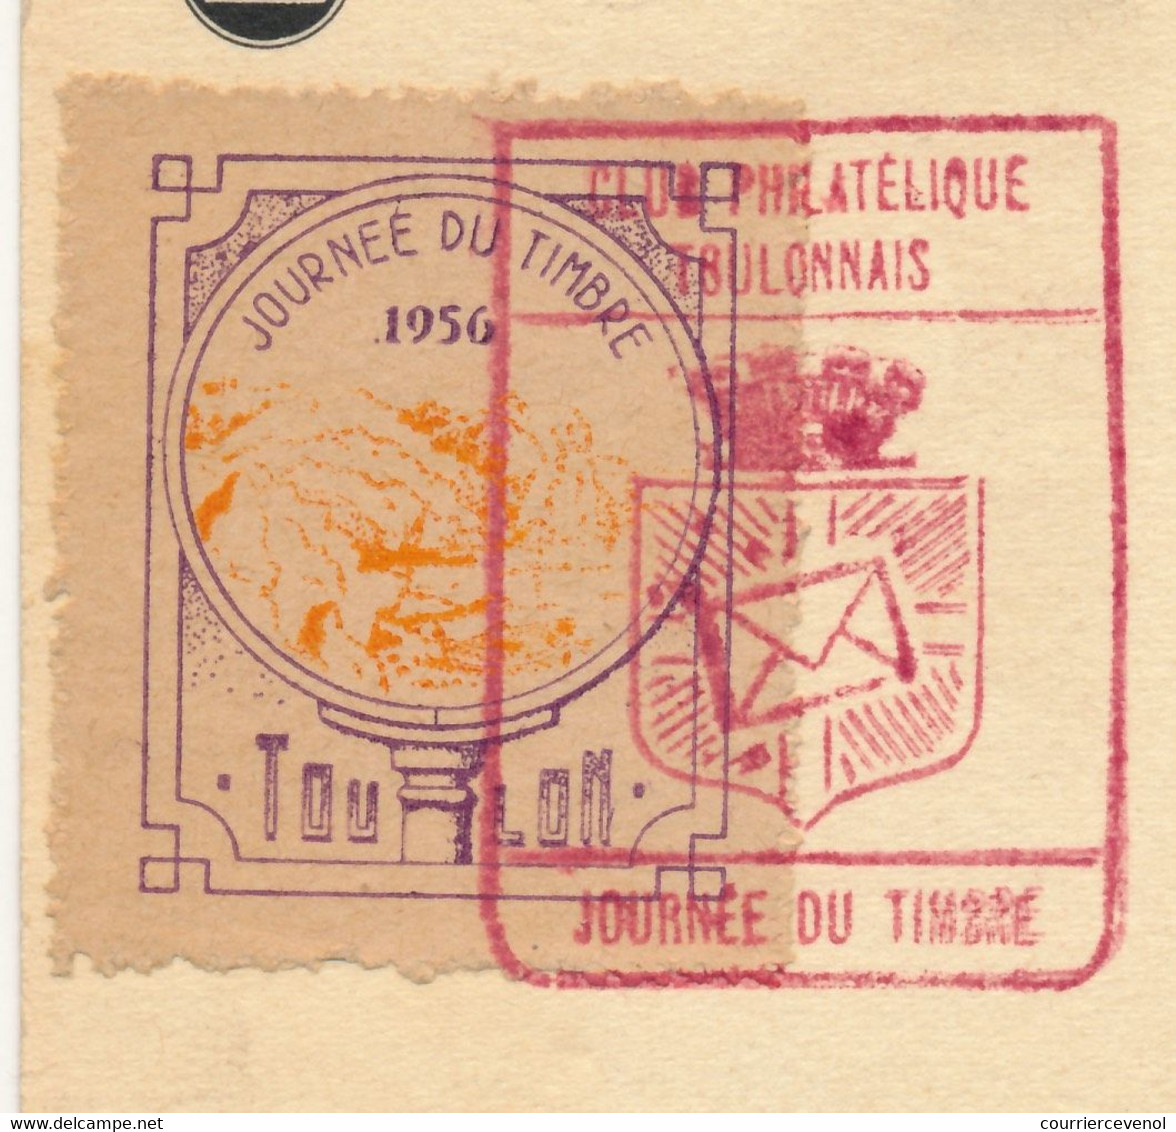 FRANCE => Vignette "Journée Du Timbre 1956 TOULON" Sur Carte Fédérale 12F + 3F François De Tassis - Toulon 1956 - Filatelistische Tentoonstellingen